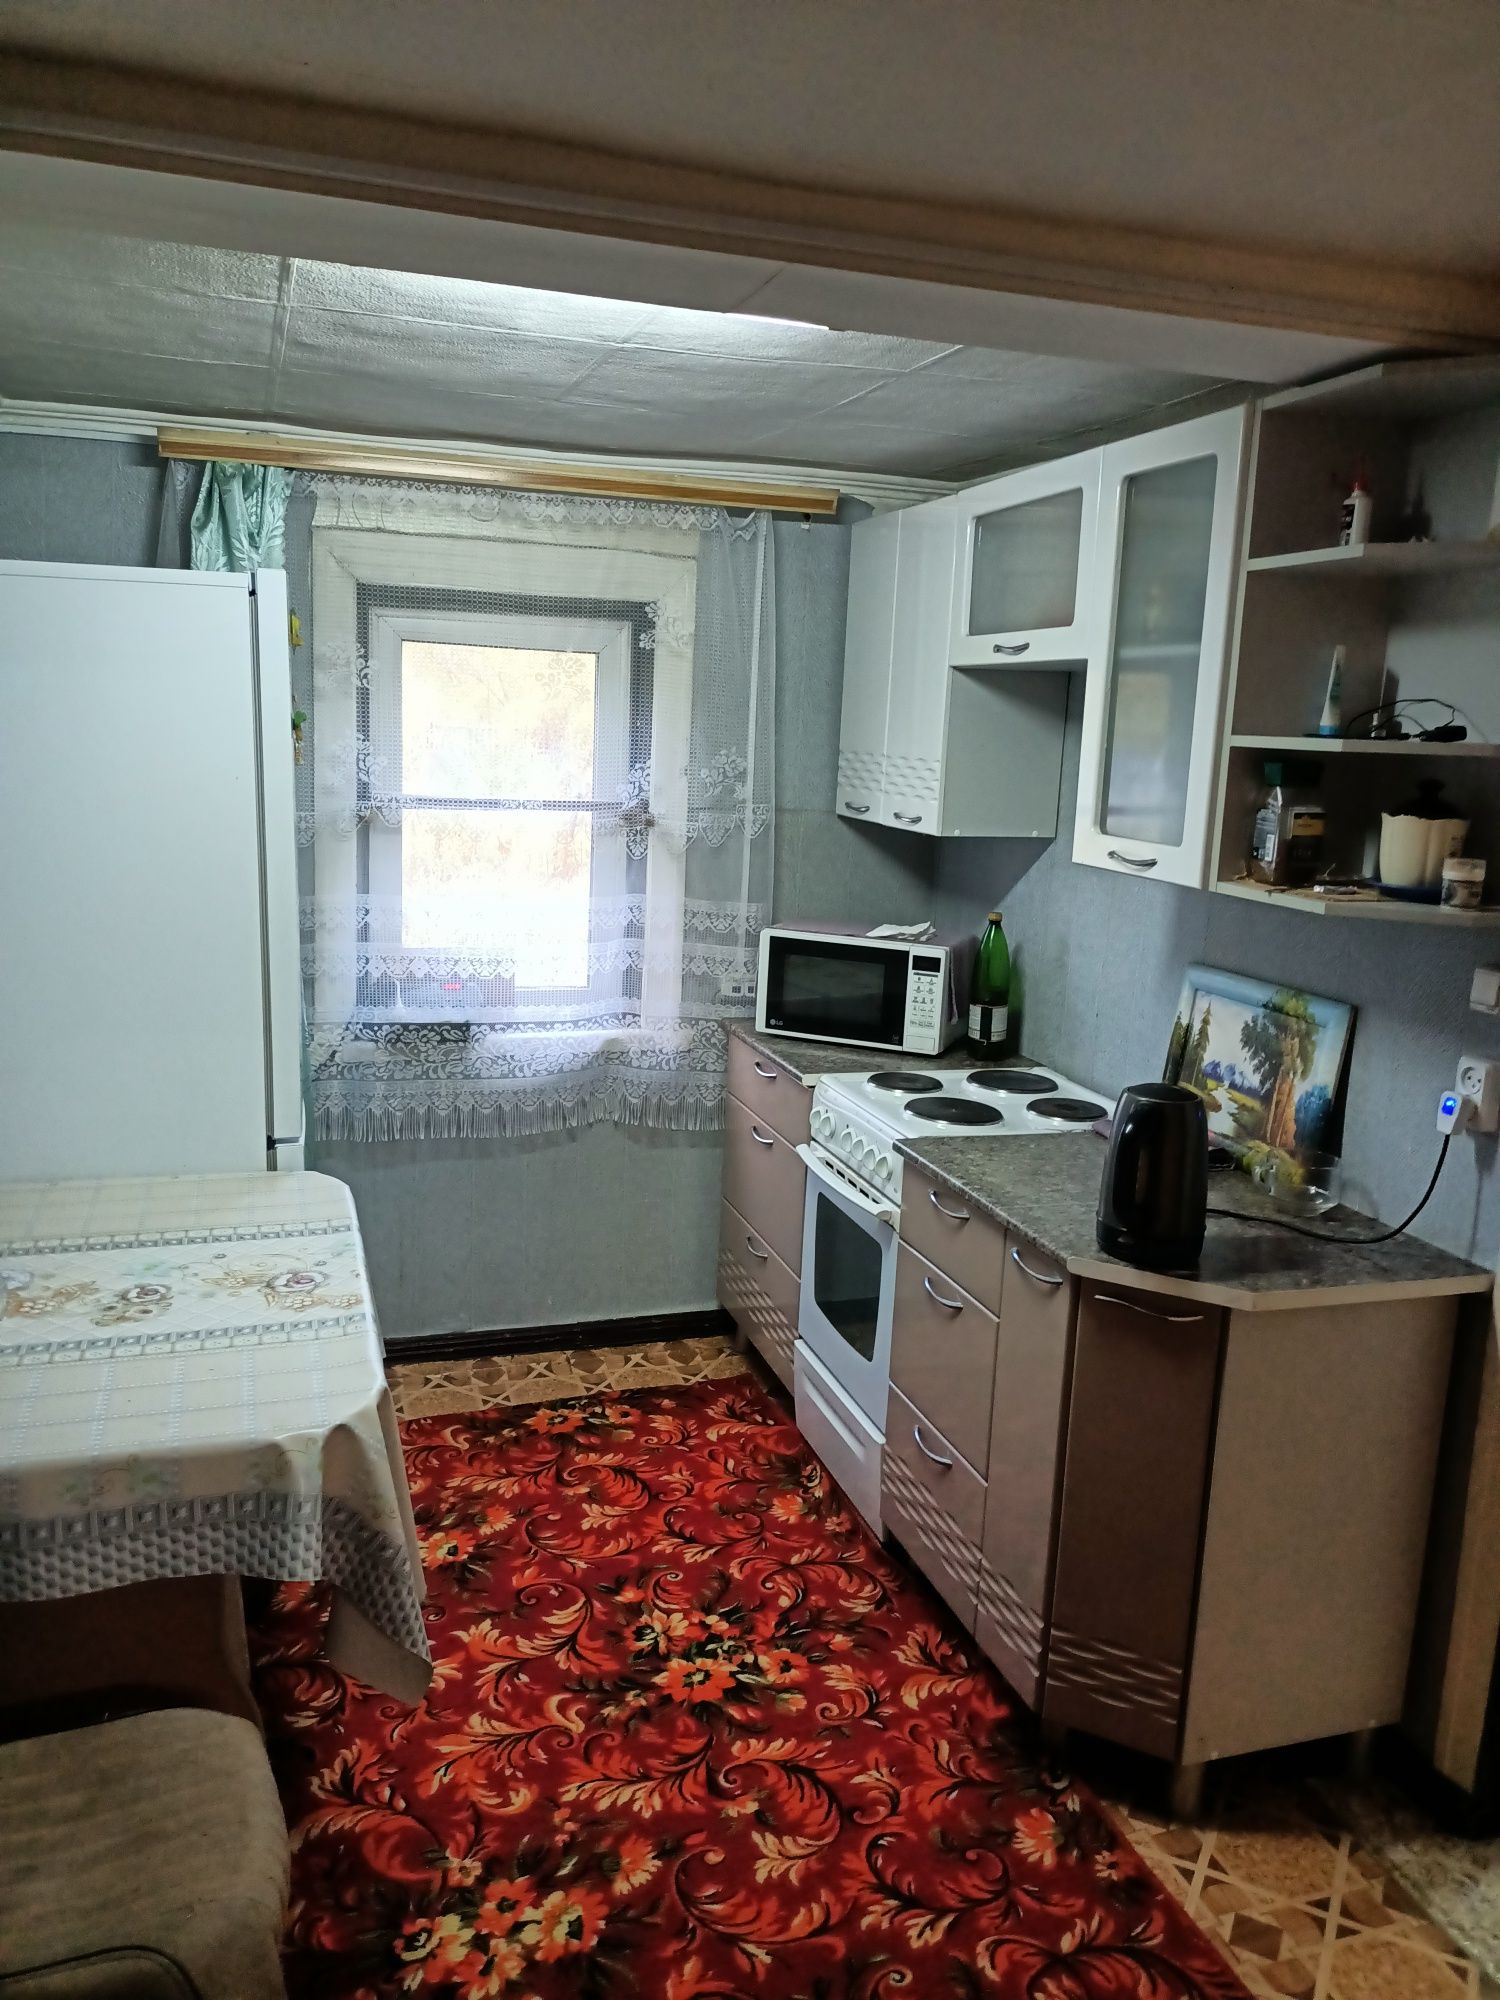 Продам 3-х комнатный дом, район Гавани, ул. Ульбинская 145, без долгов